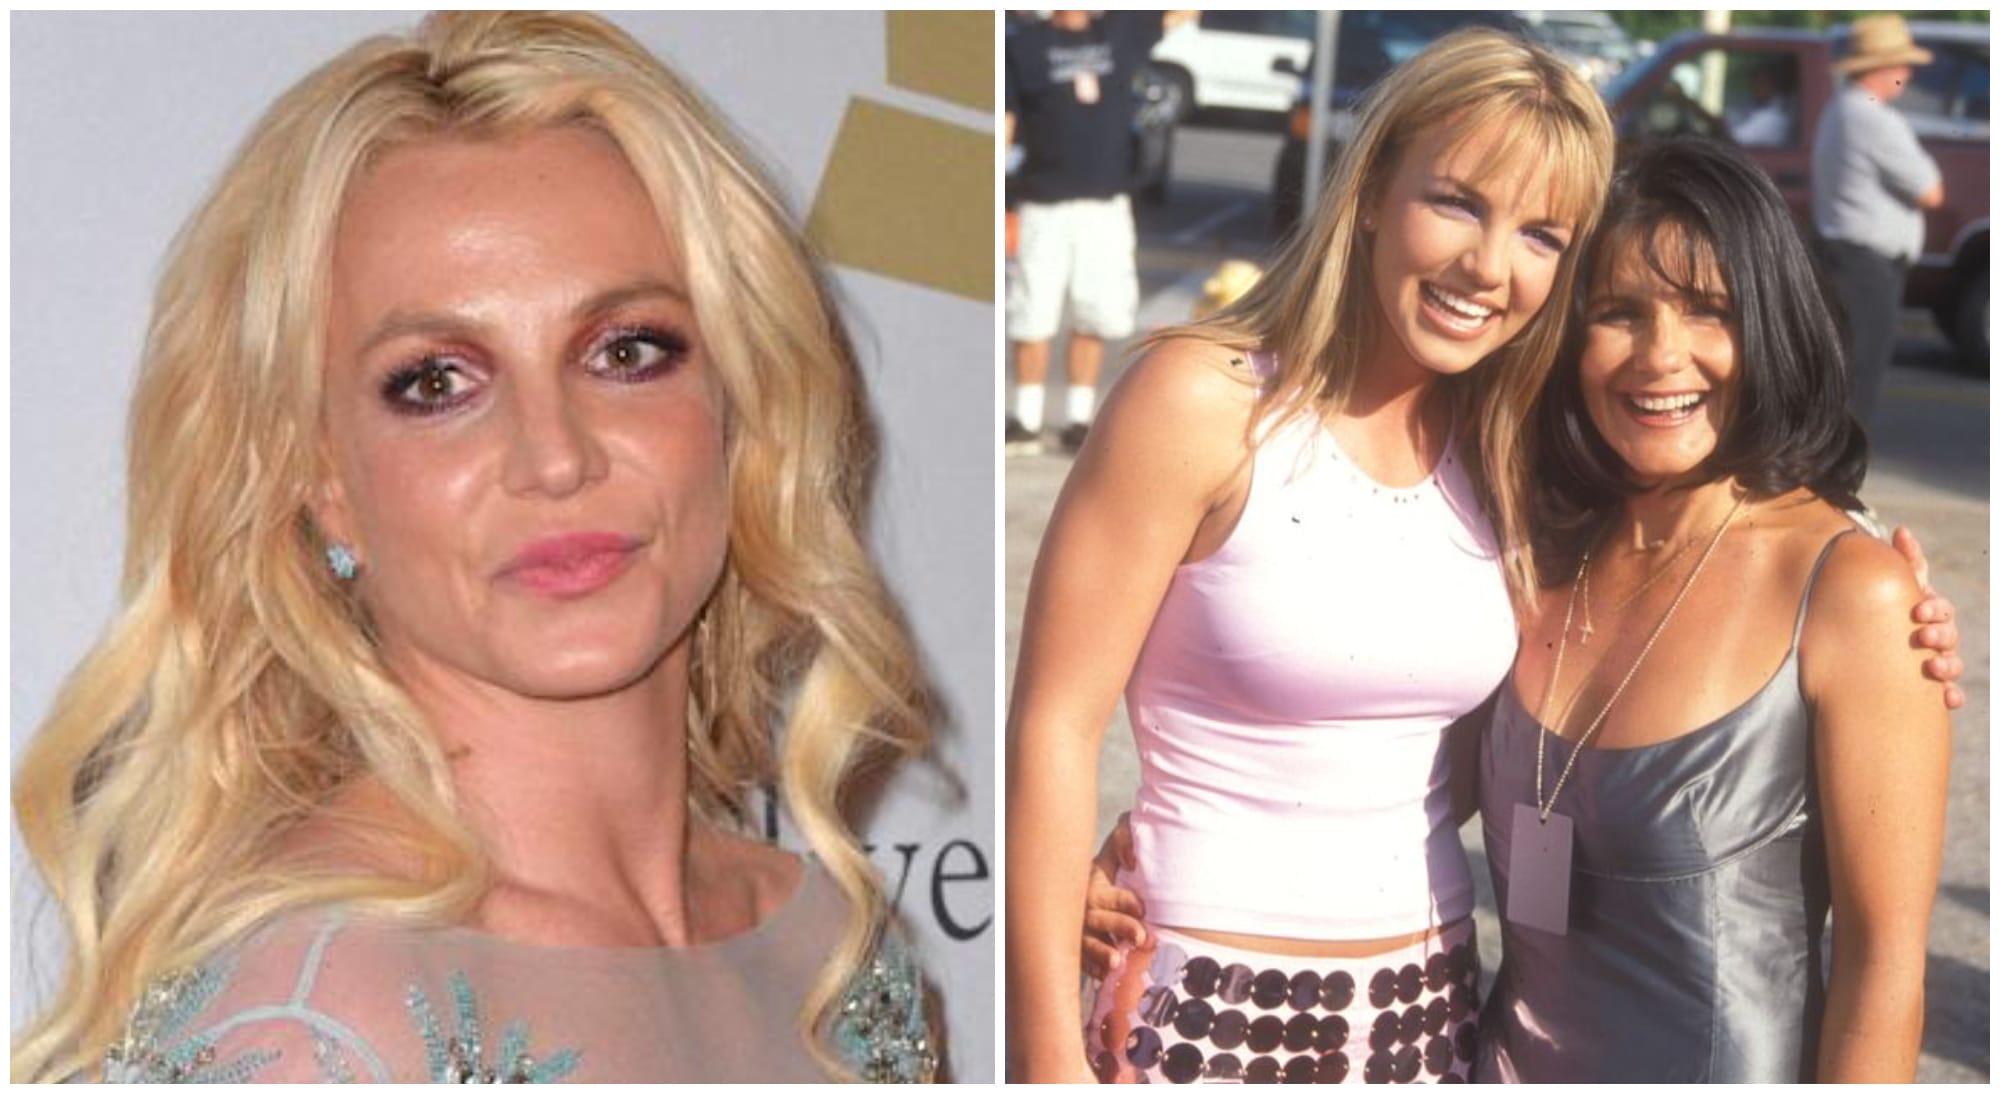 Britney Spears s'en prend à sa mère dans une virulente publication qu'elle supprime dans la foulée